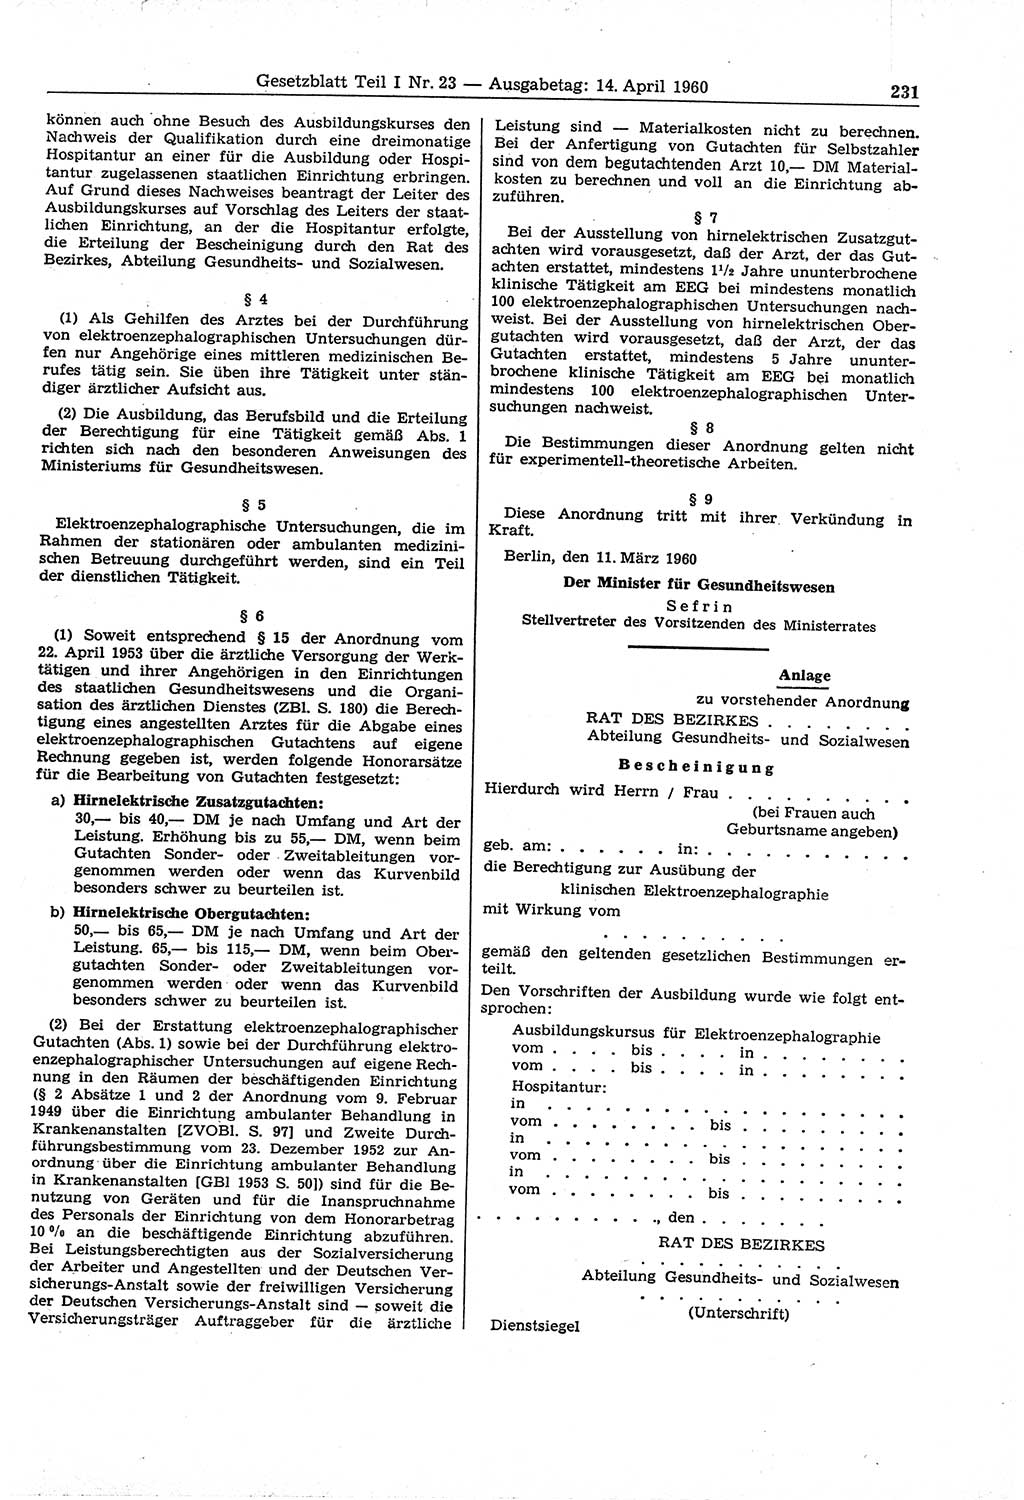 Gesetzblatt (GBl.) der Deutschen Demokratischen Republik (DDR) Teil Ⅰ 1960, Seite 231 (GBl. DDR Ⅰ 1960, S. 231)